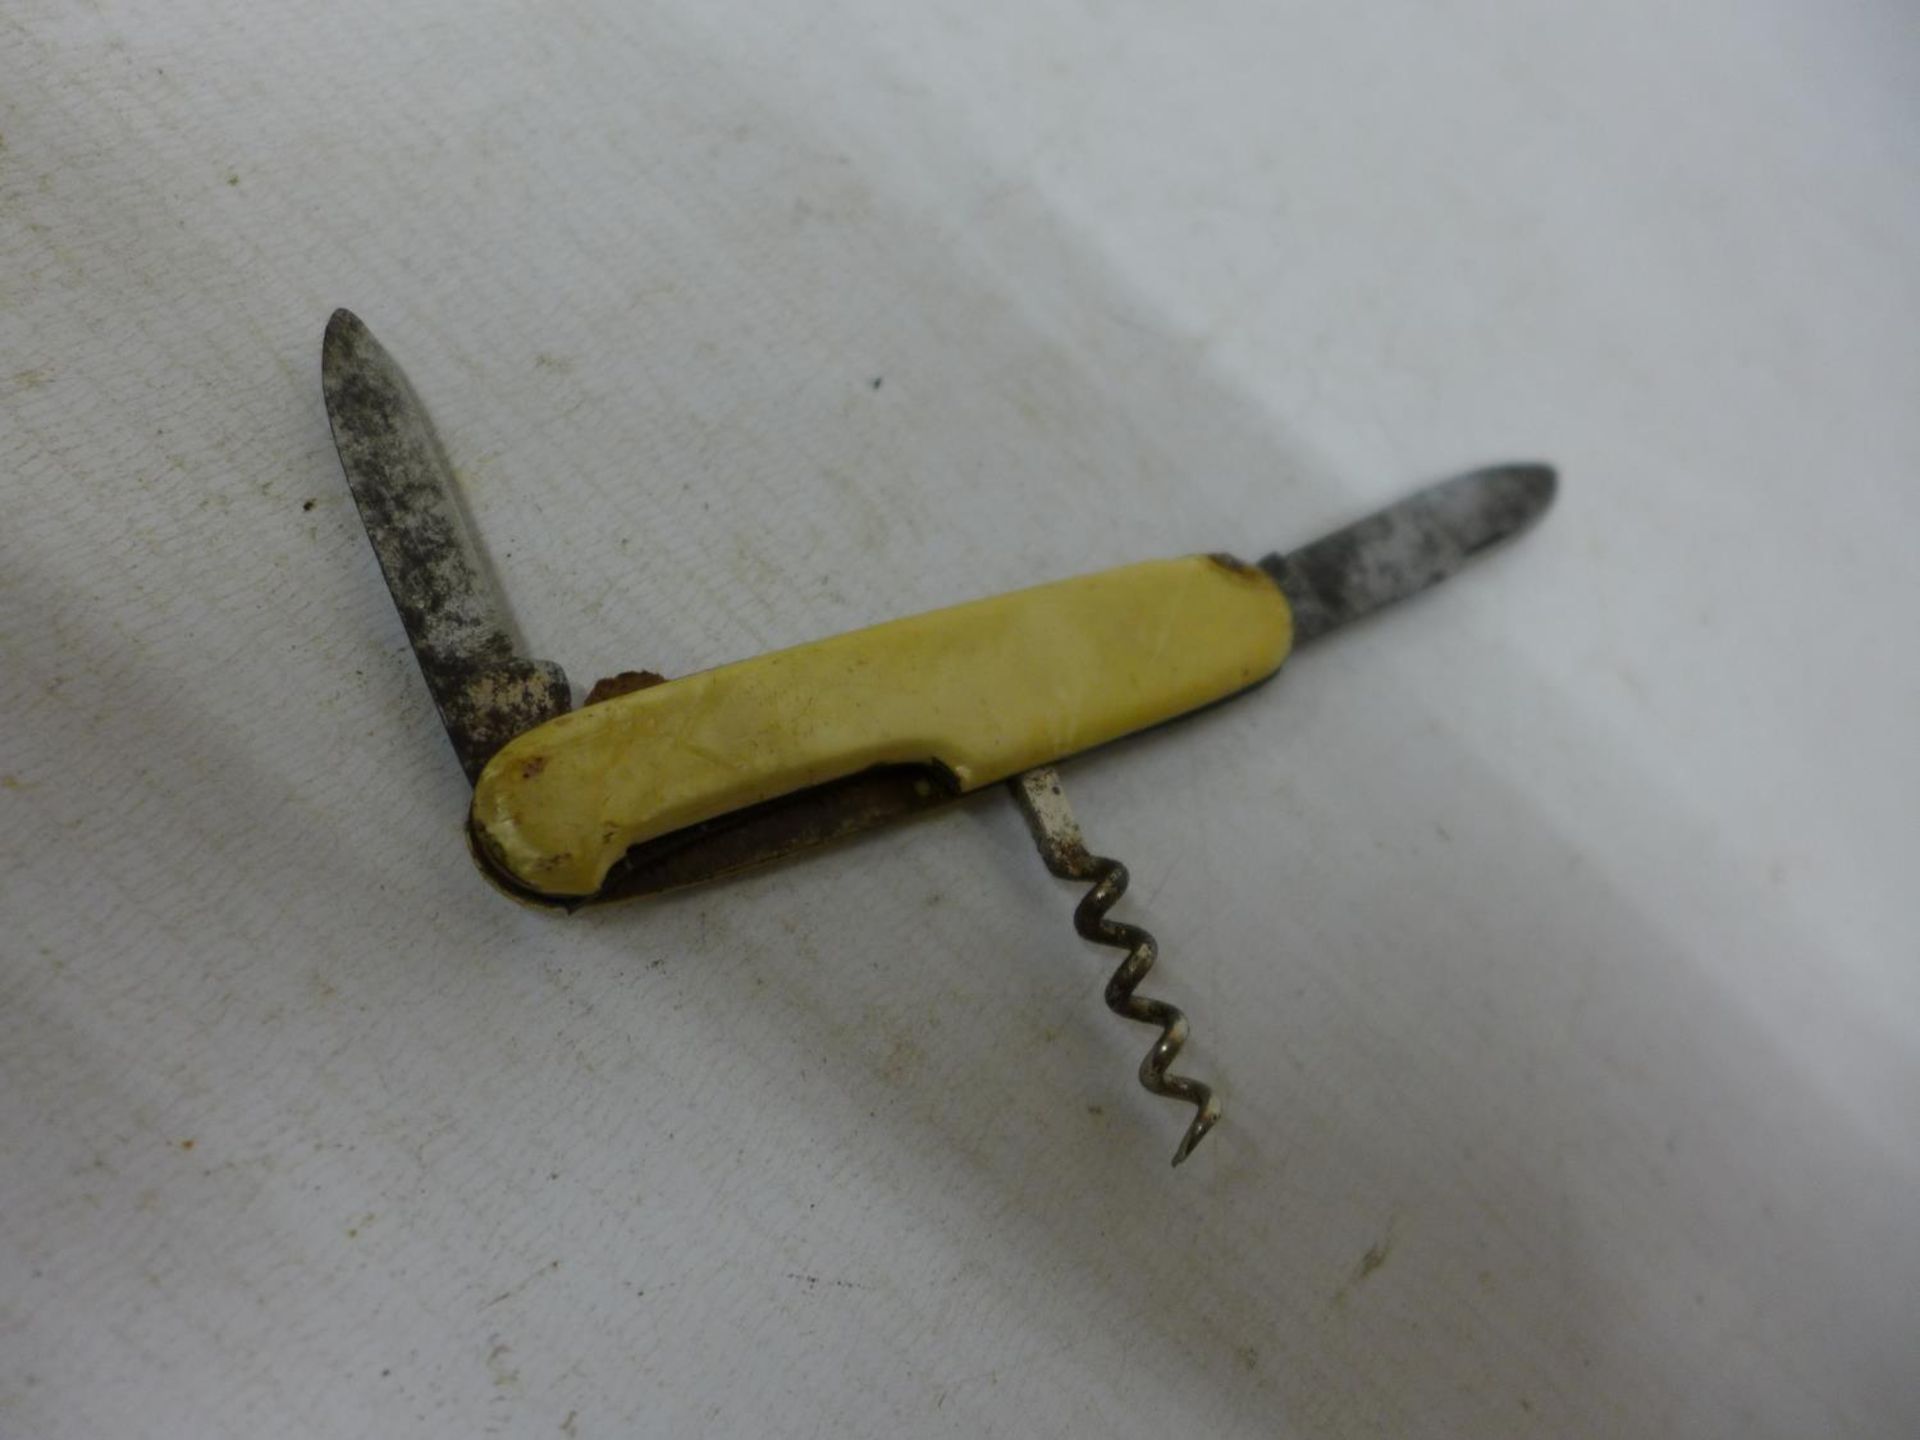 A VINTAGE GERMAN SOUVENIR POCKET KNIFE - Image 3 of 3